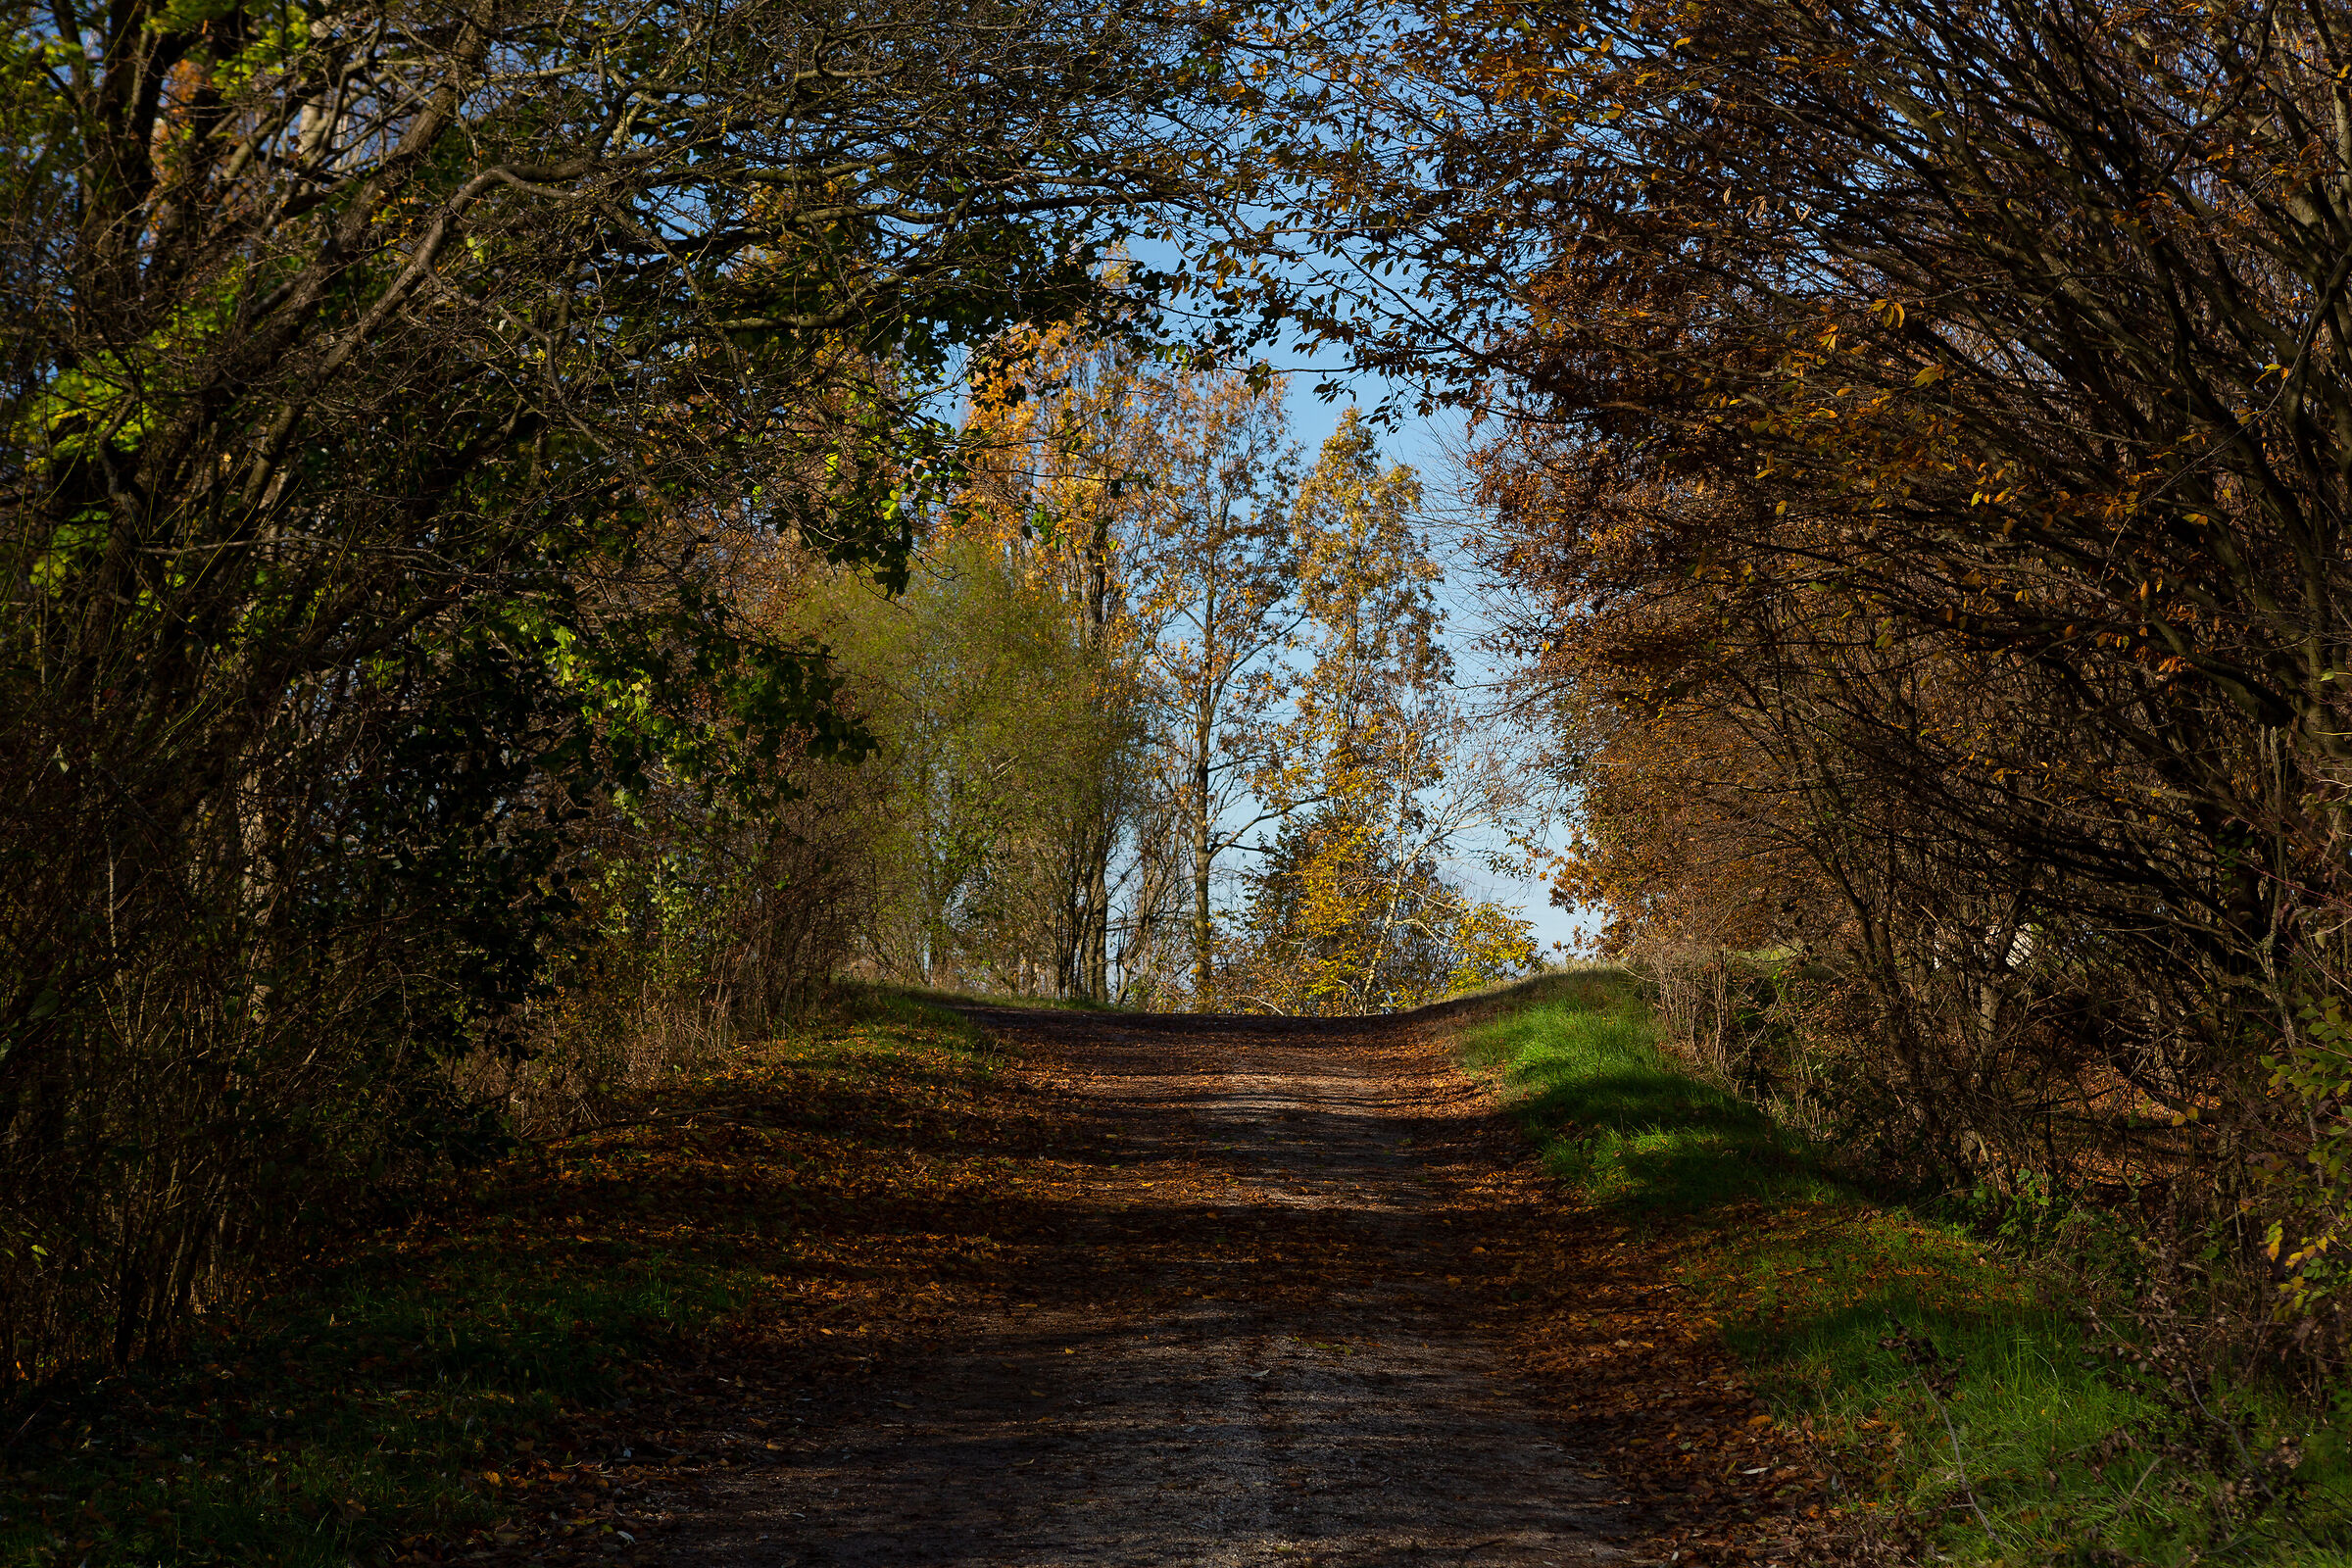 A gateway to autumn...